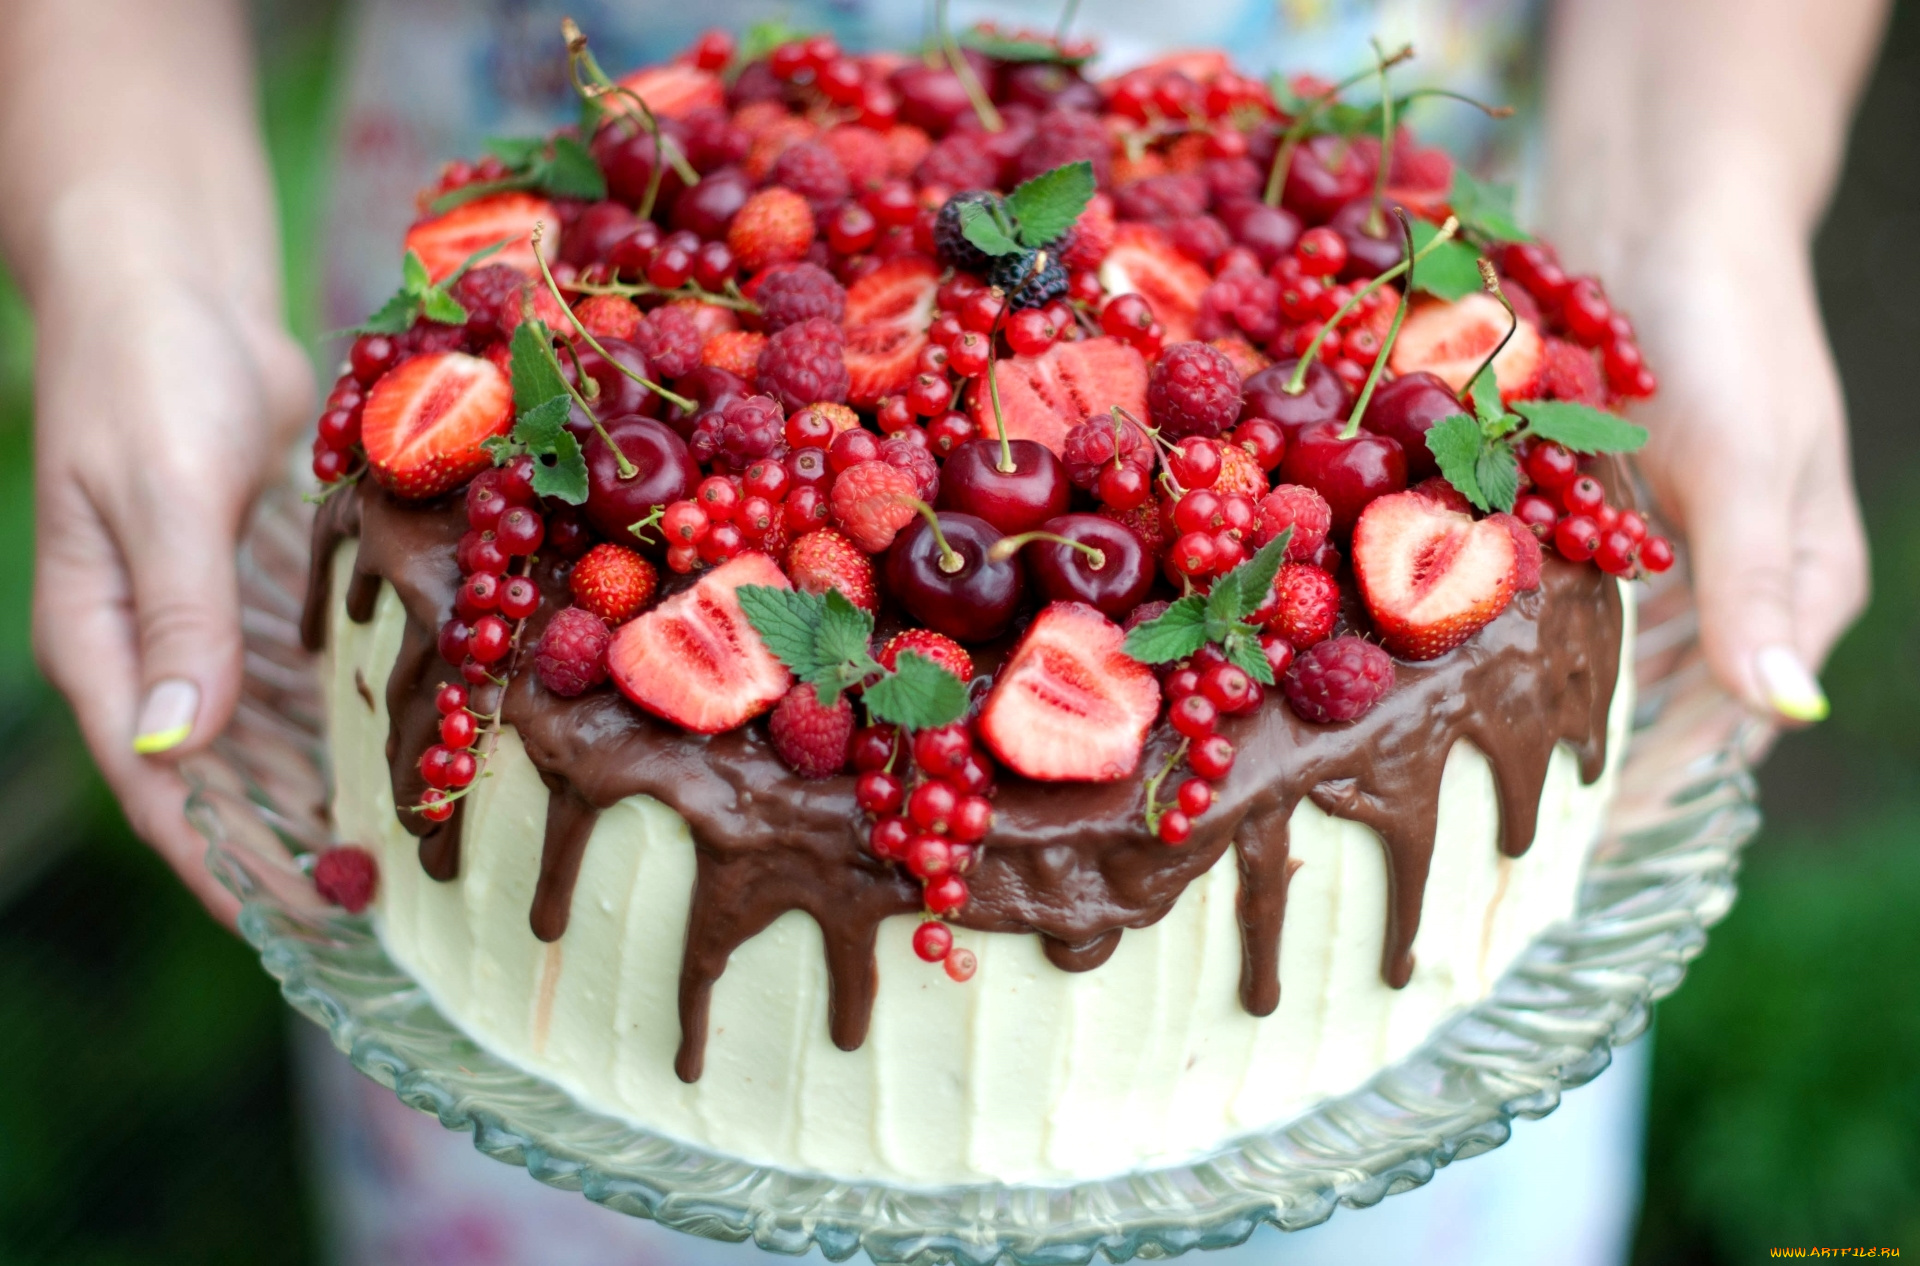 еда, торты, смородина, малина, клубника, шоколад, мята, ягоды, вишня, торт